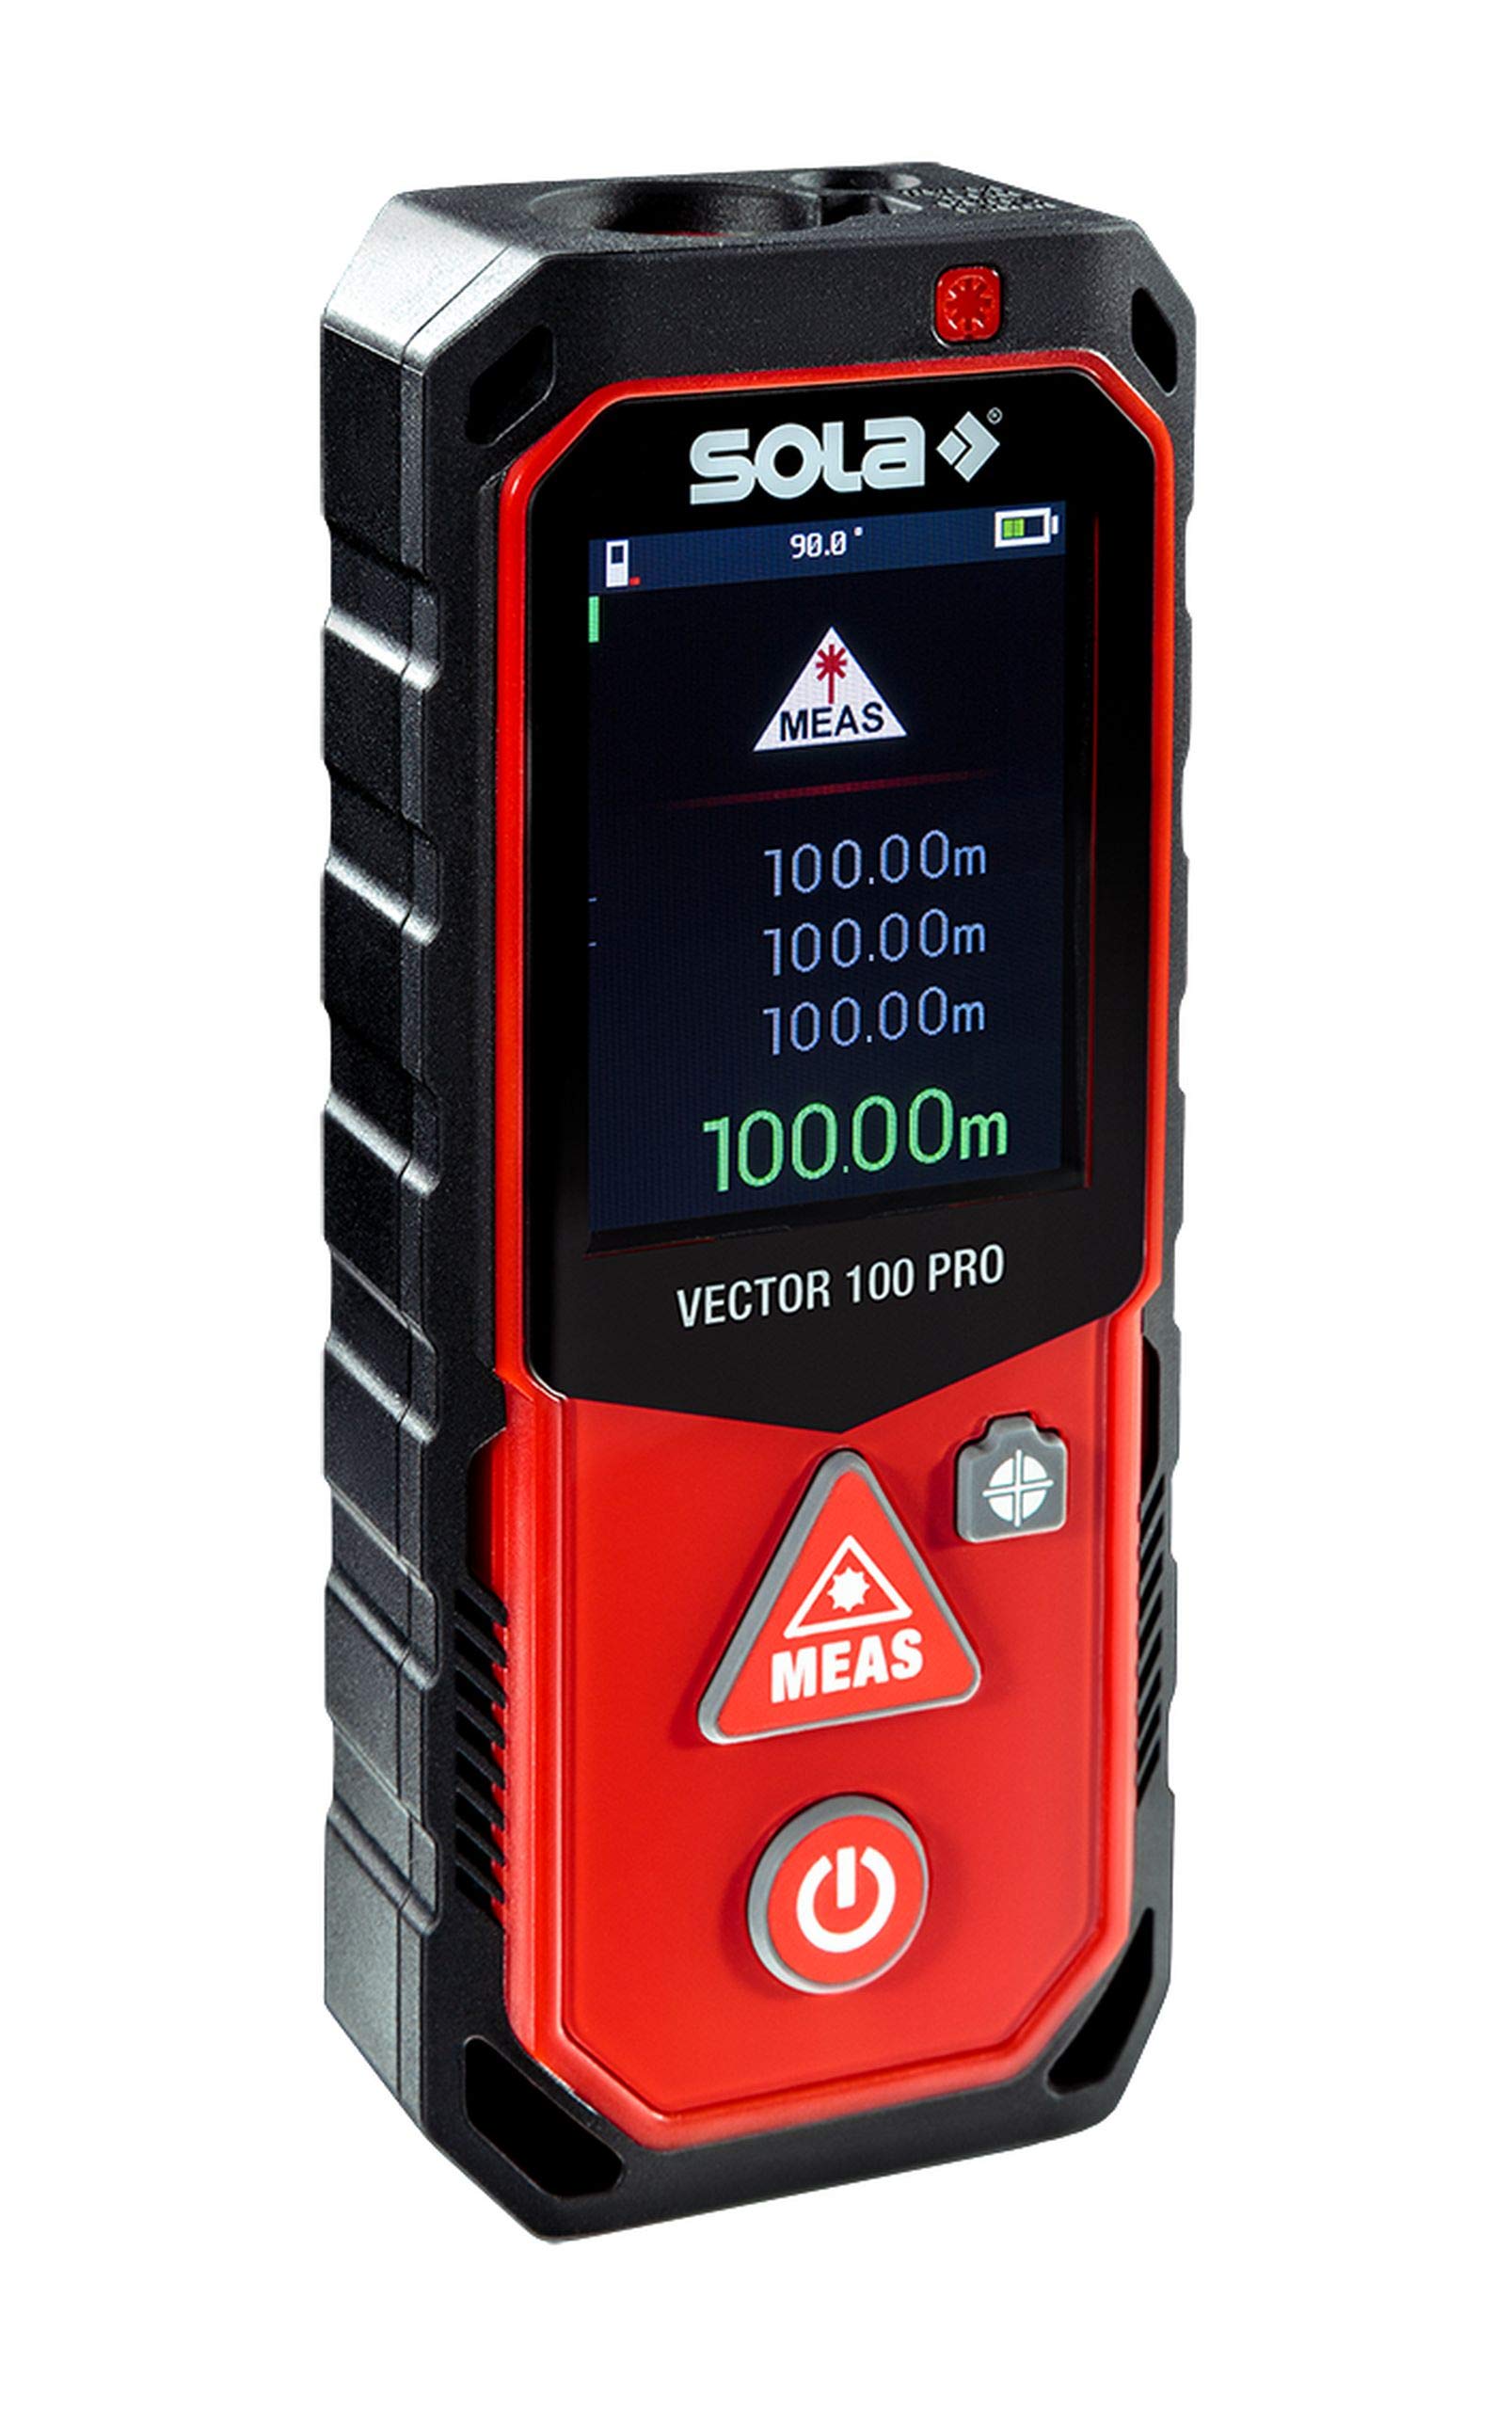 SOLA Vector 100 Pro Laser-Entfernungsmesser 100 m - Laser-Messgerät – 11 Messfunktionen - Kamera mit eingebautem 4-Fach Zoom - USB Schnittstelle - Bluetooth + App – NI-Mh Akku – IP65